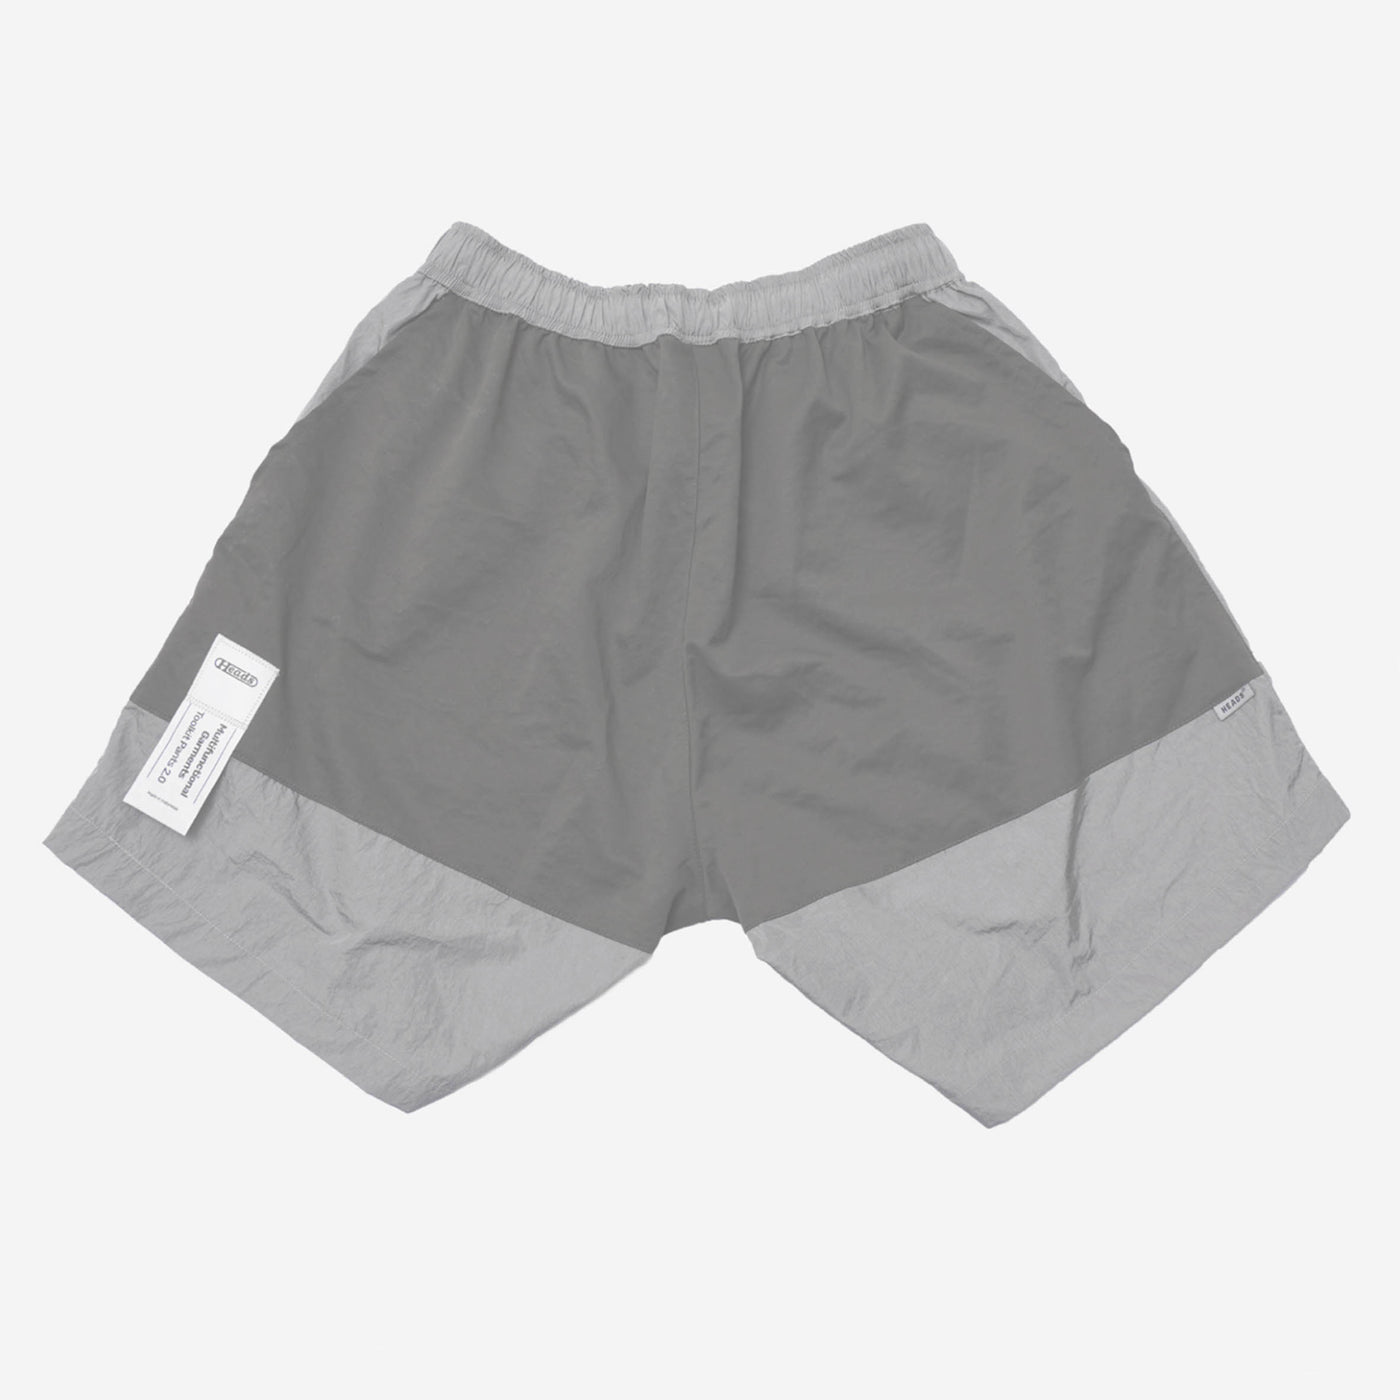 Toolkit Shorts Grey